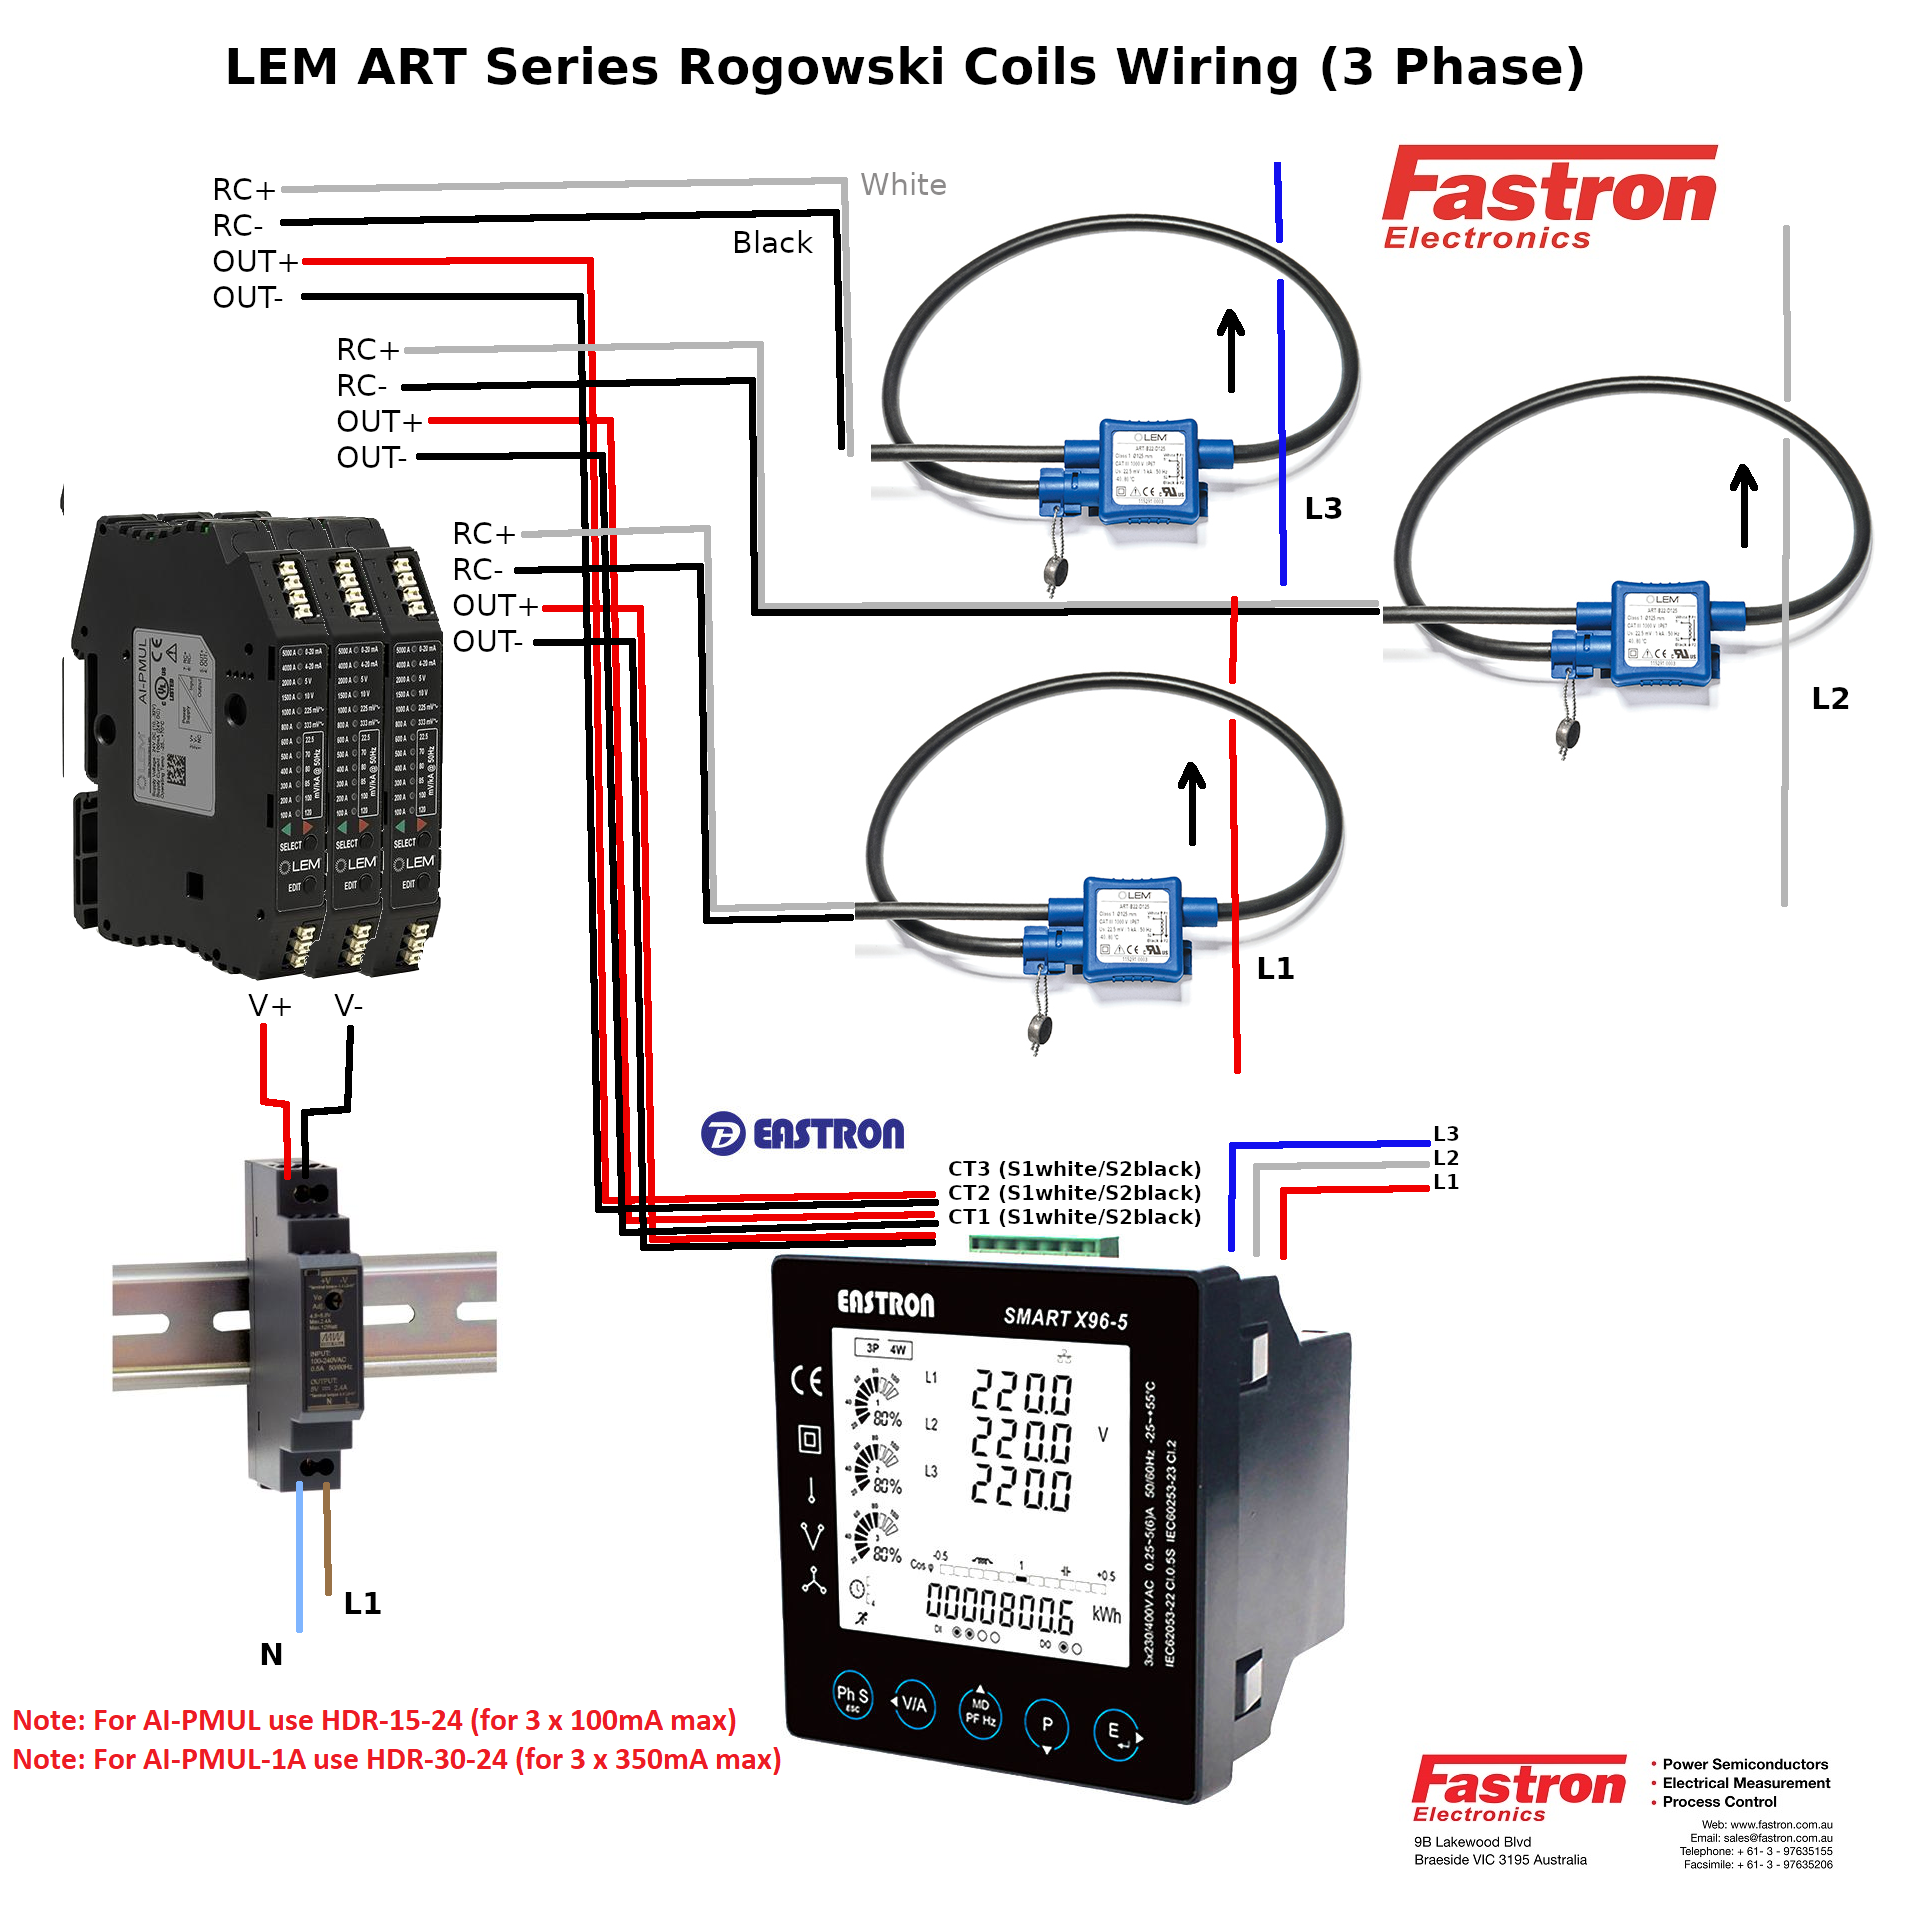 ART-B22-D300-SP4 + AI-P1A - 3 Pcs, 3 Phase Rogowski Coil Set, Class 1, 1 Amp AC, Sensitivity, and Measurement Range, 30cm Diameter, SP4 = 4.5M Integrator Cable